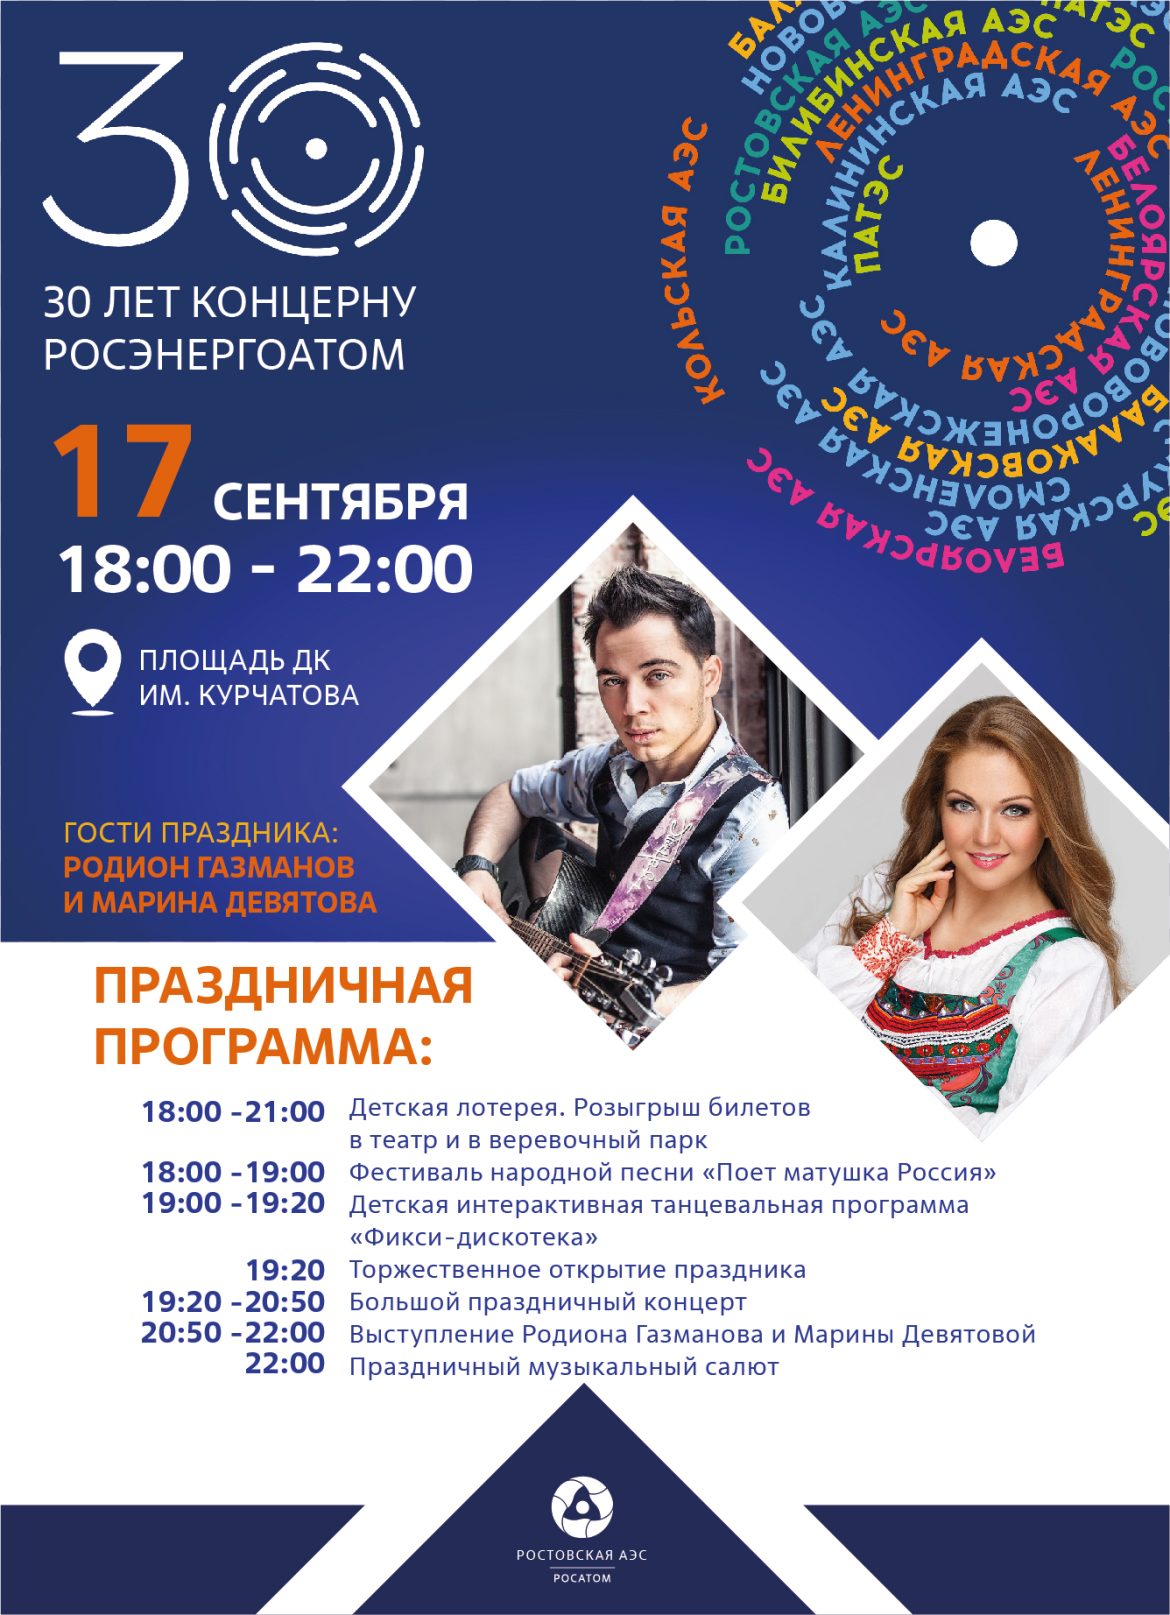 Ростовская АЭС: в Волгодонске пройдет праздник, посвященный 30-летию концерна «Росэнергоатом»